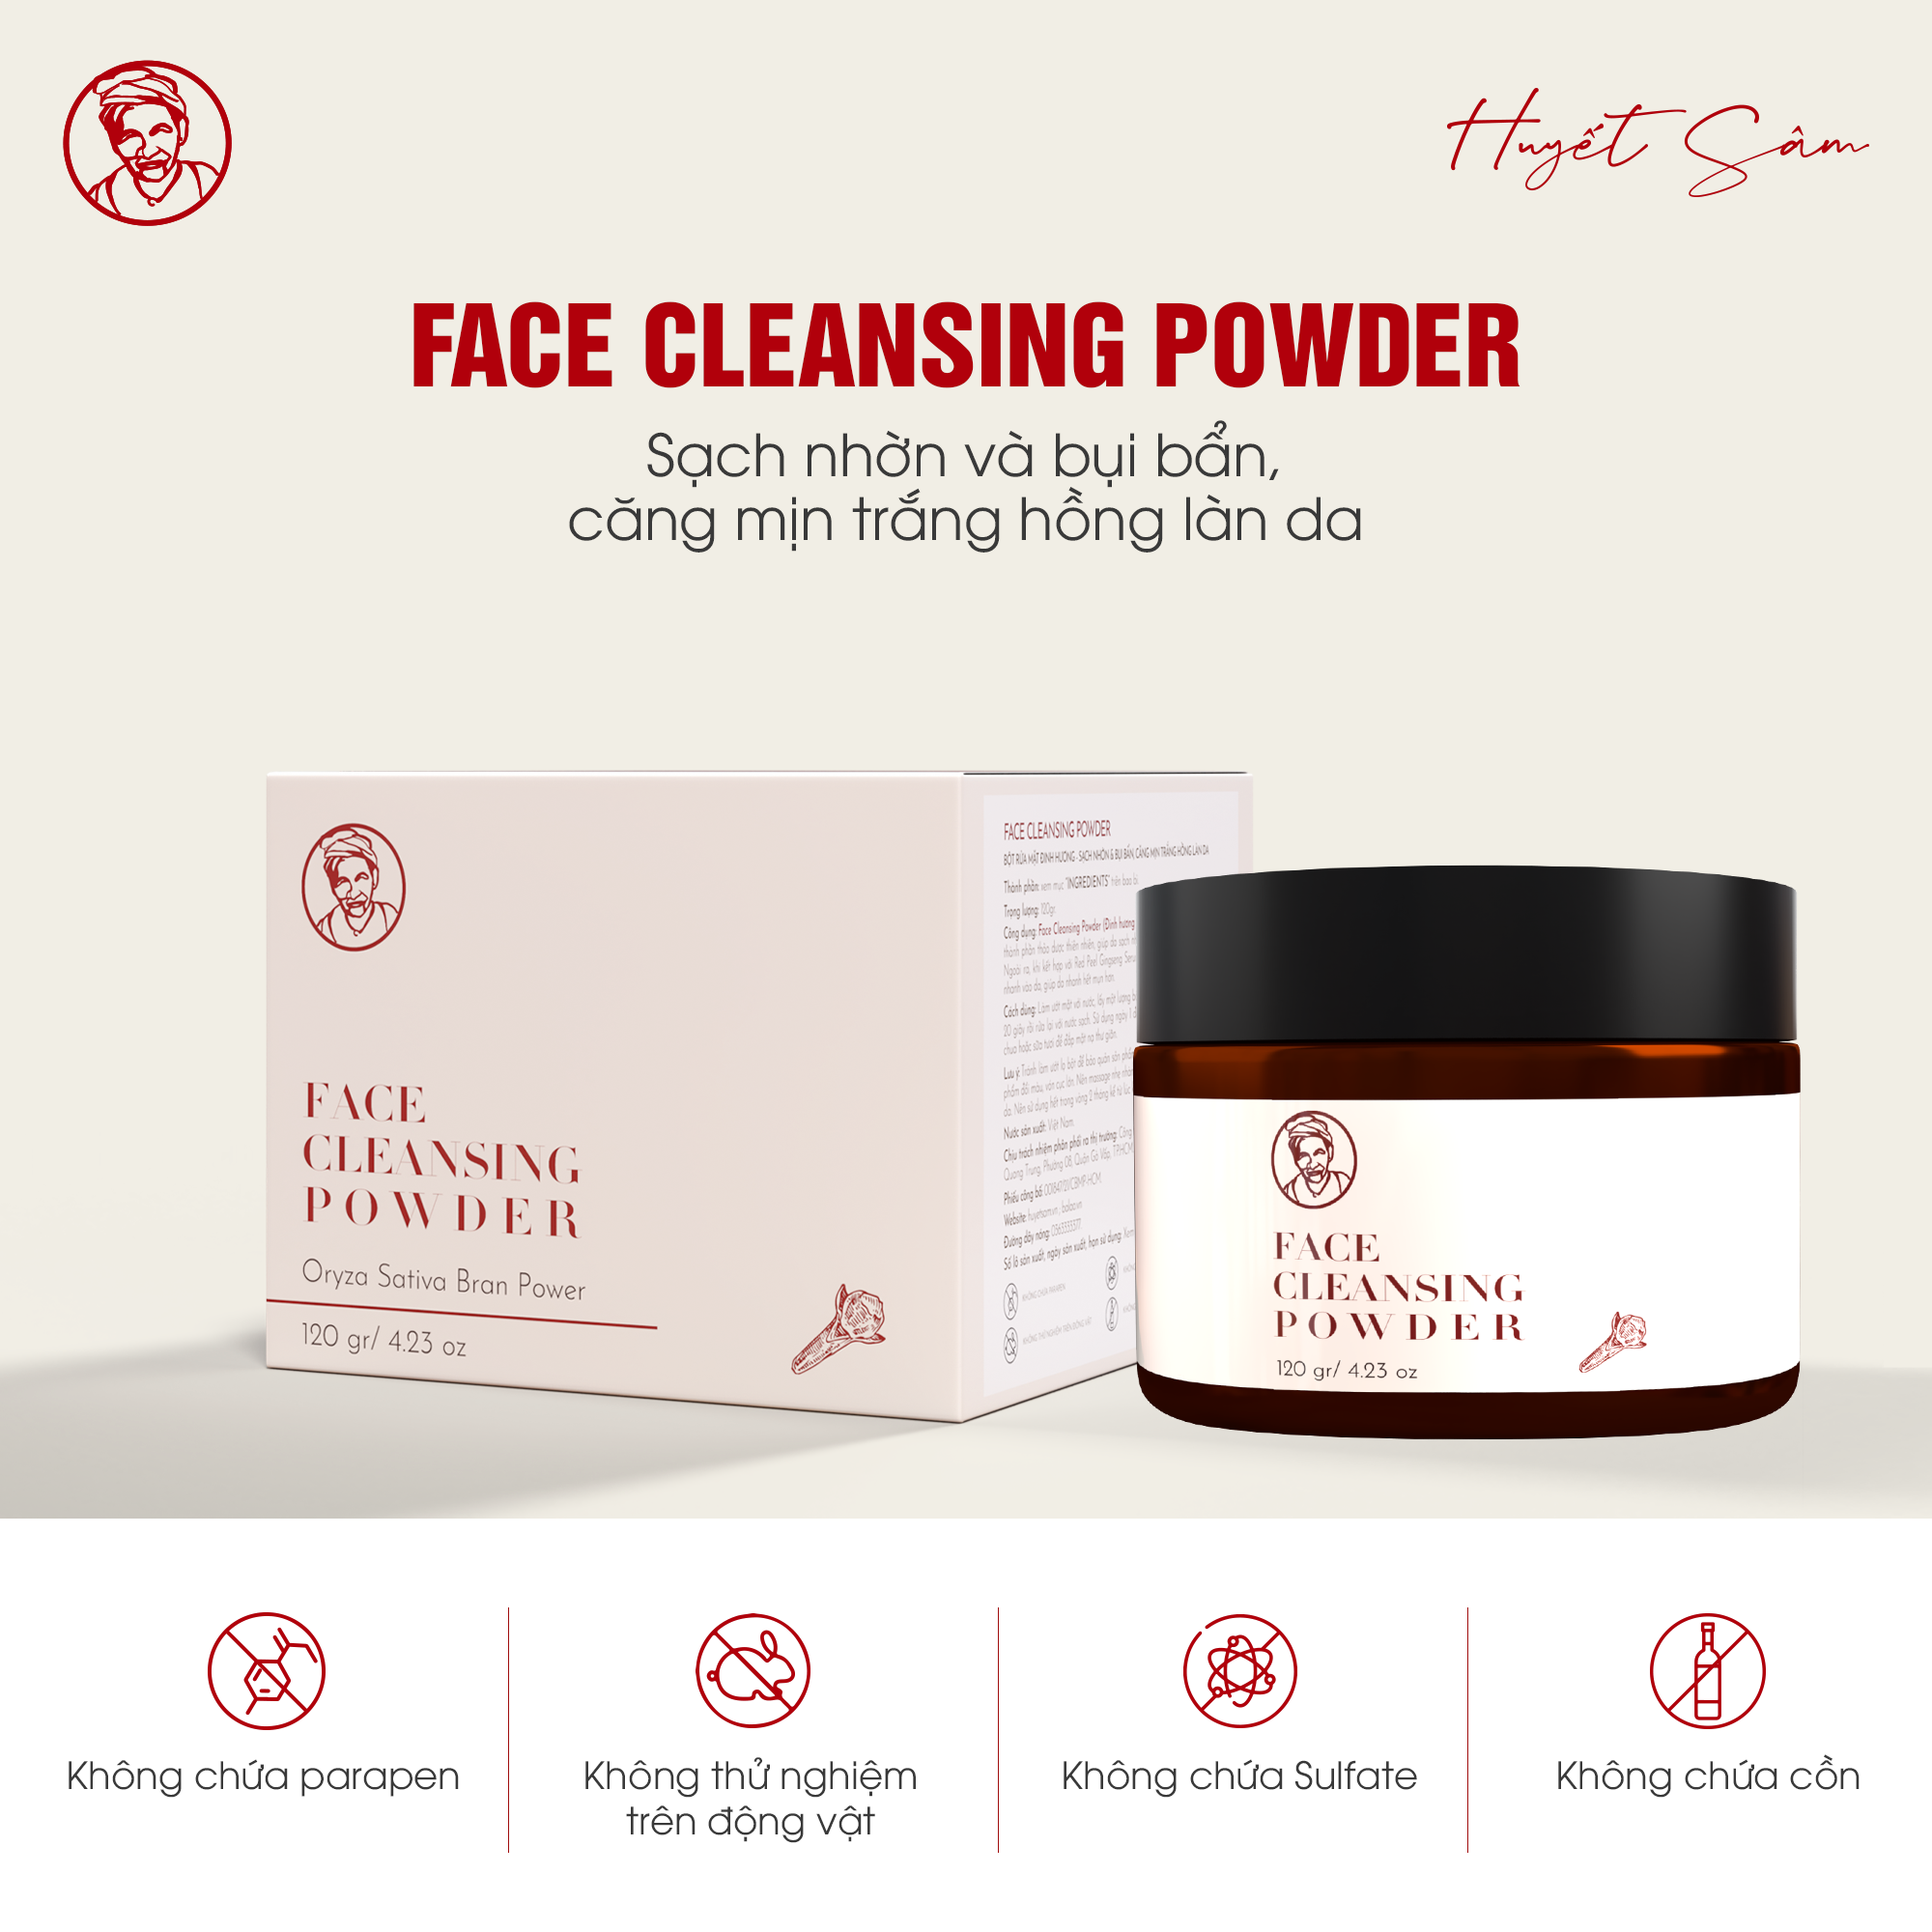 Face Cleansing Powder 120gr - Bột rửa mặt Đinh Hương Bà Lão Mới